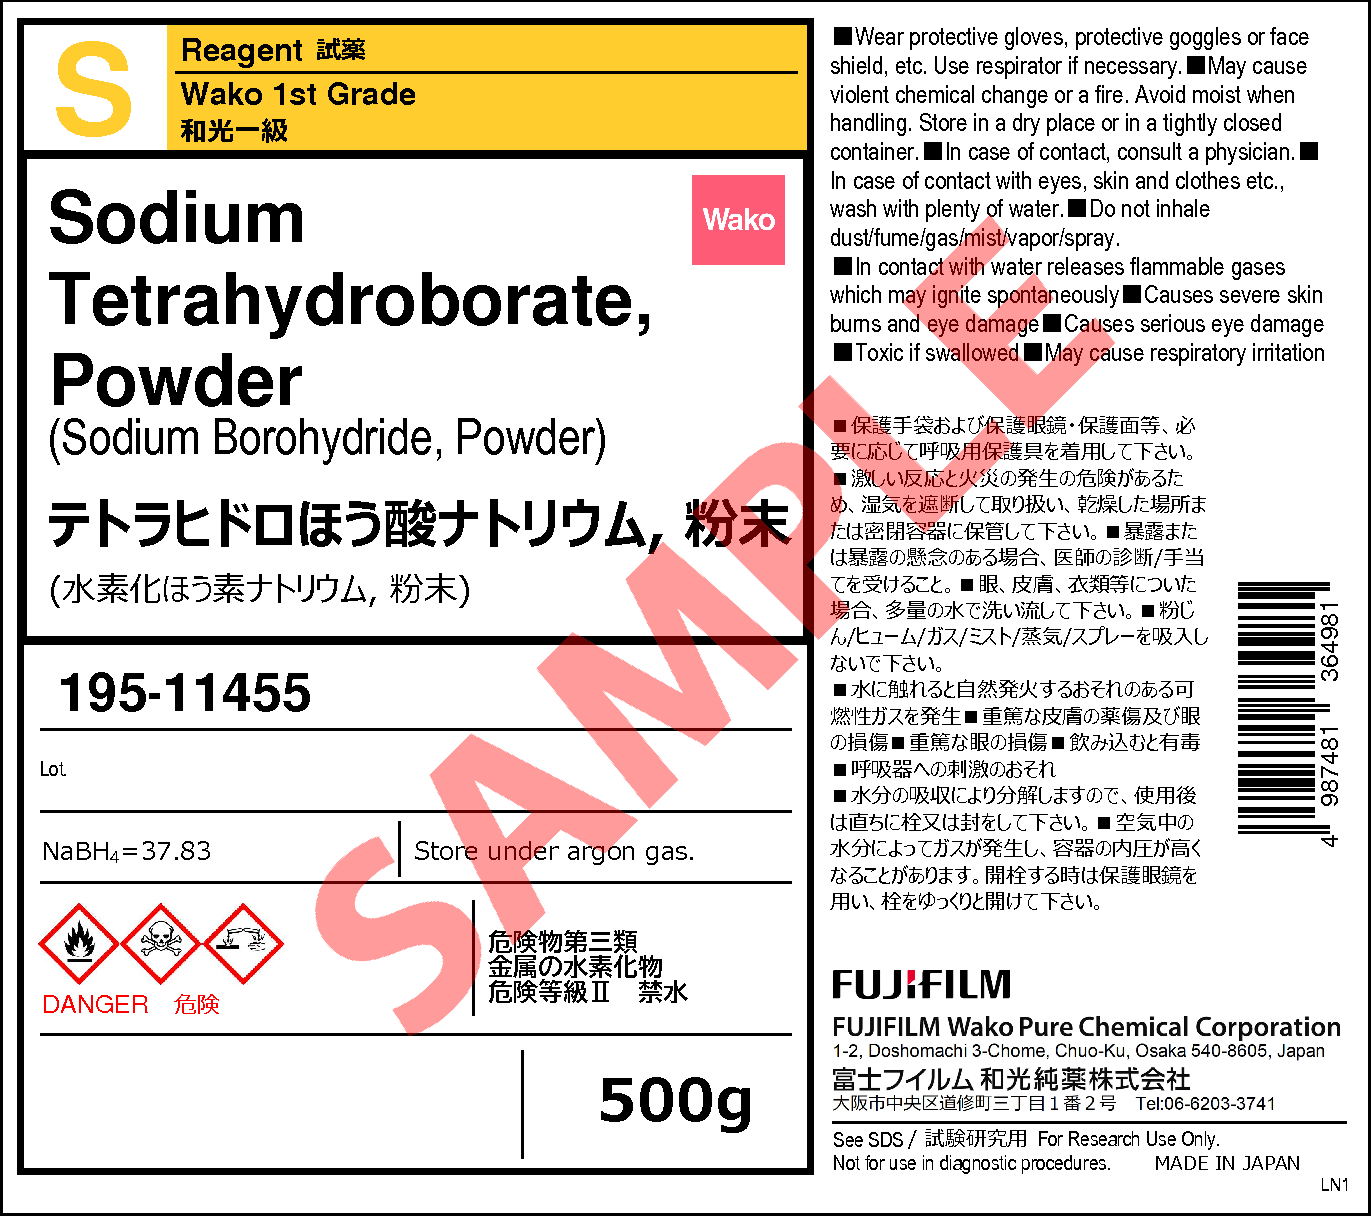 66 2 テトラヒドロほう酸ナトリウム 粉末 Sodium Tetrahydroborate Powder 191 195 詳細情報 試薬 富士フイルム和光純薬